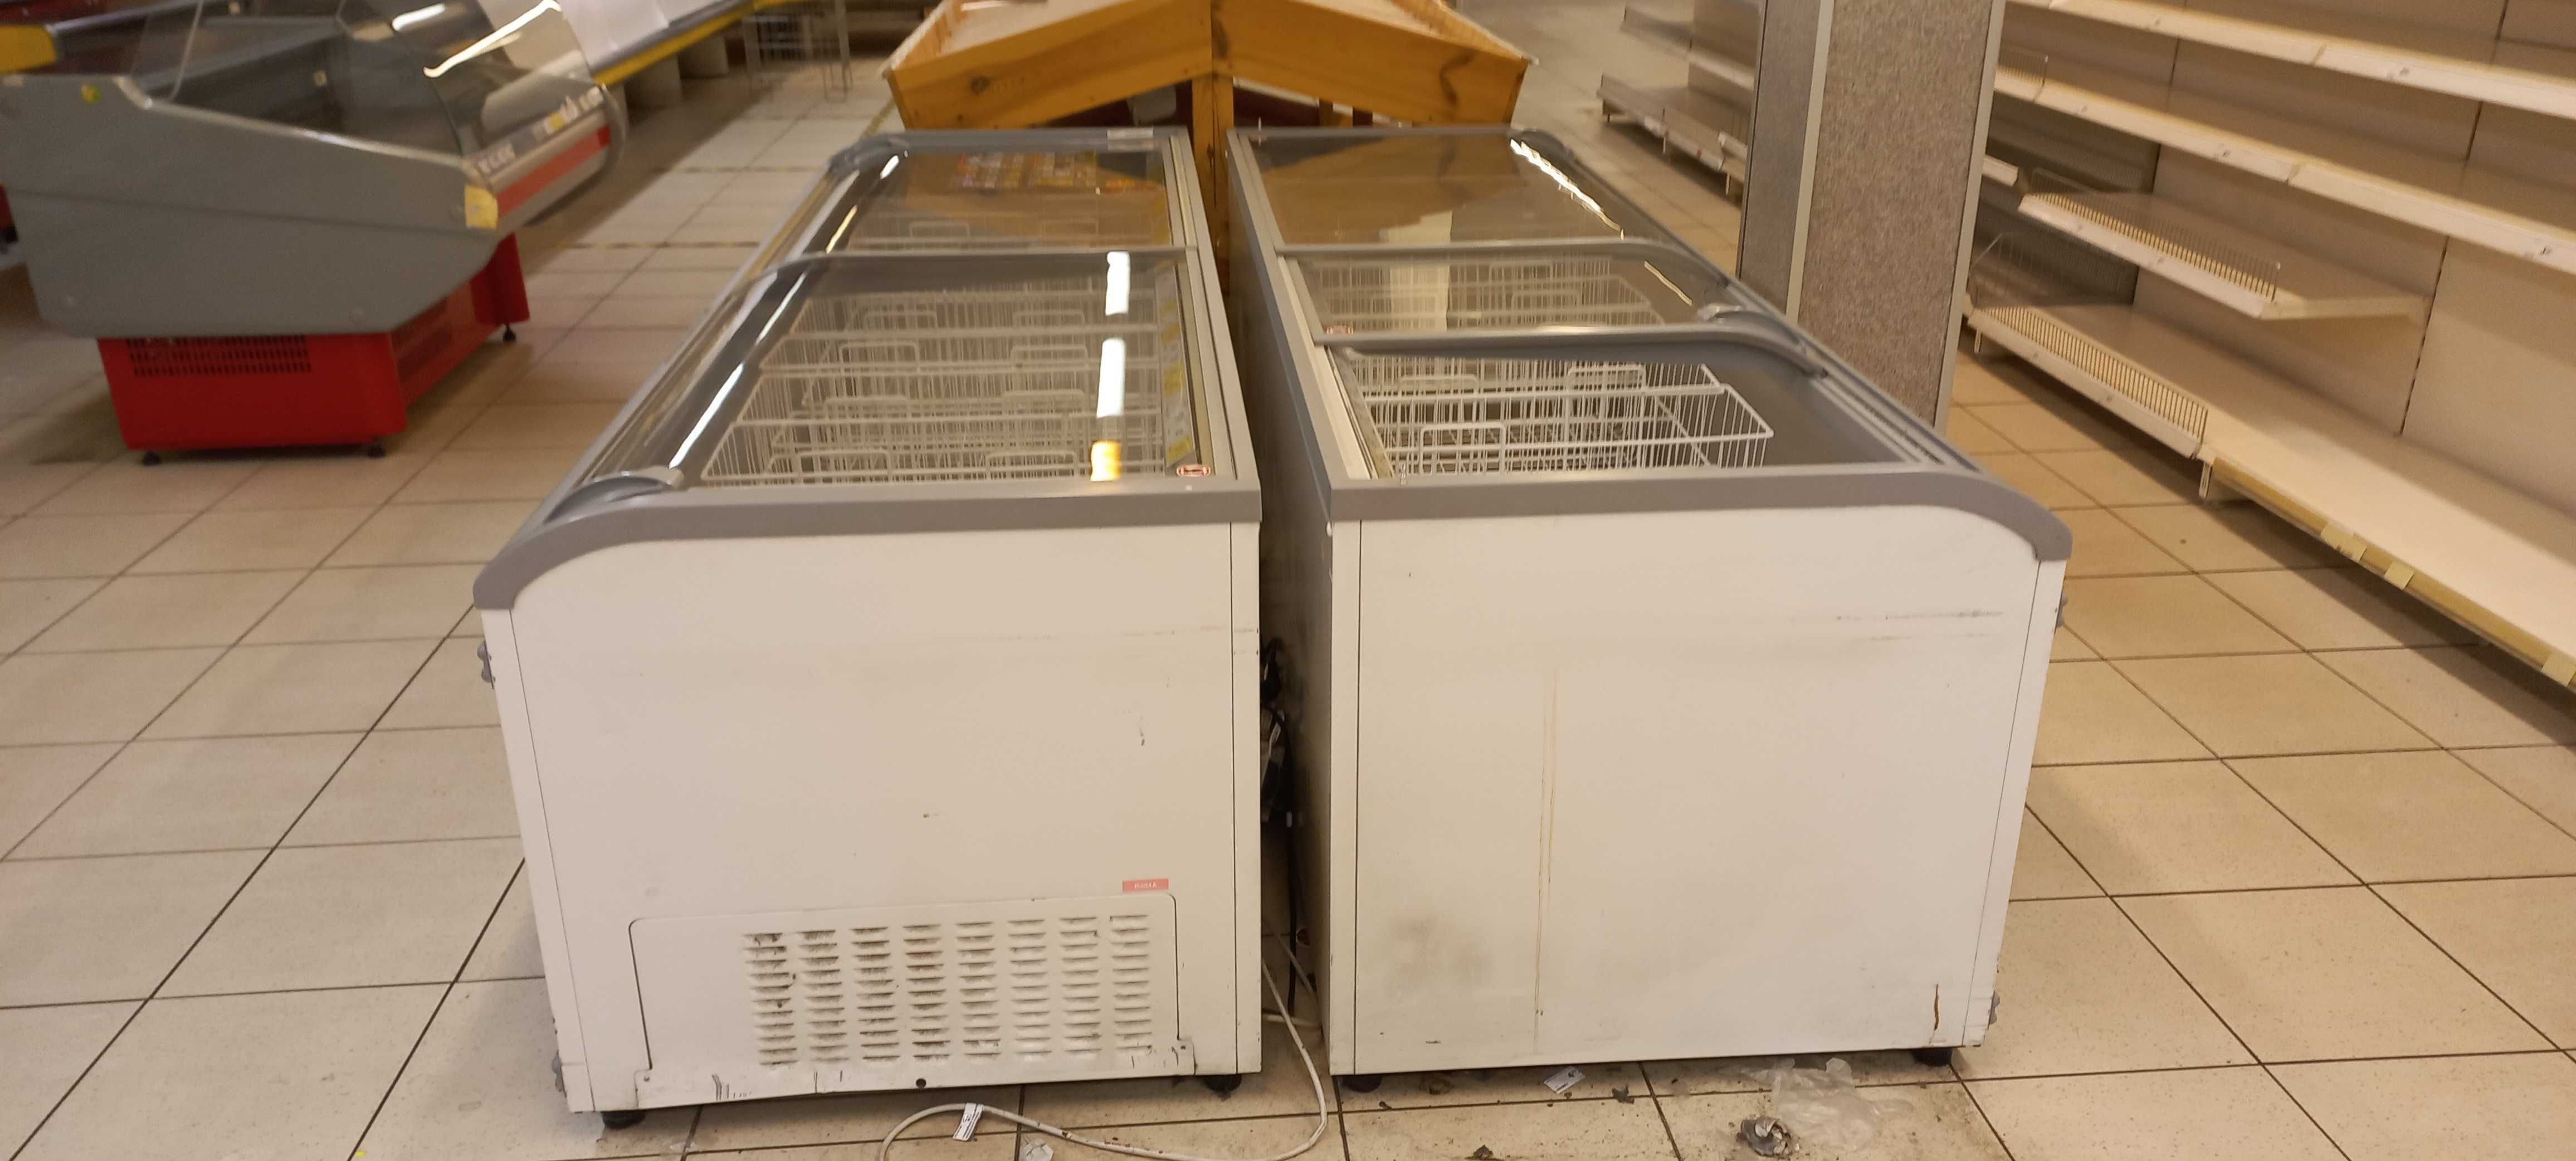 Skup gastro urządzeń chłodniczych lada Unox Juka lodówka JBG mawi iglo